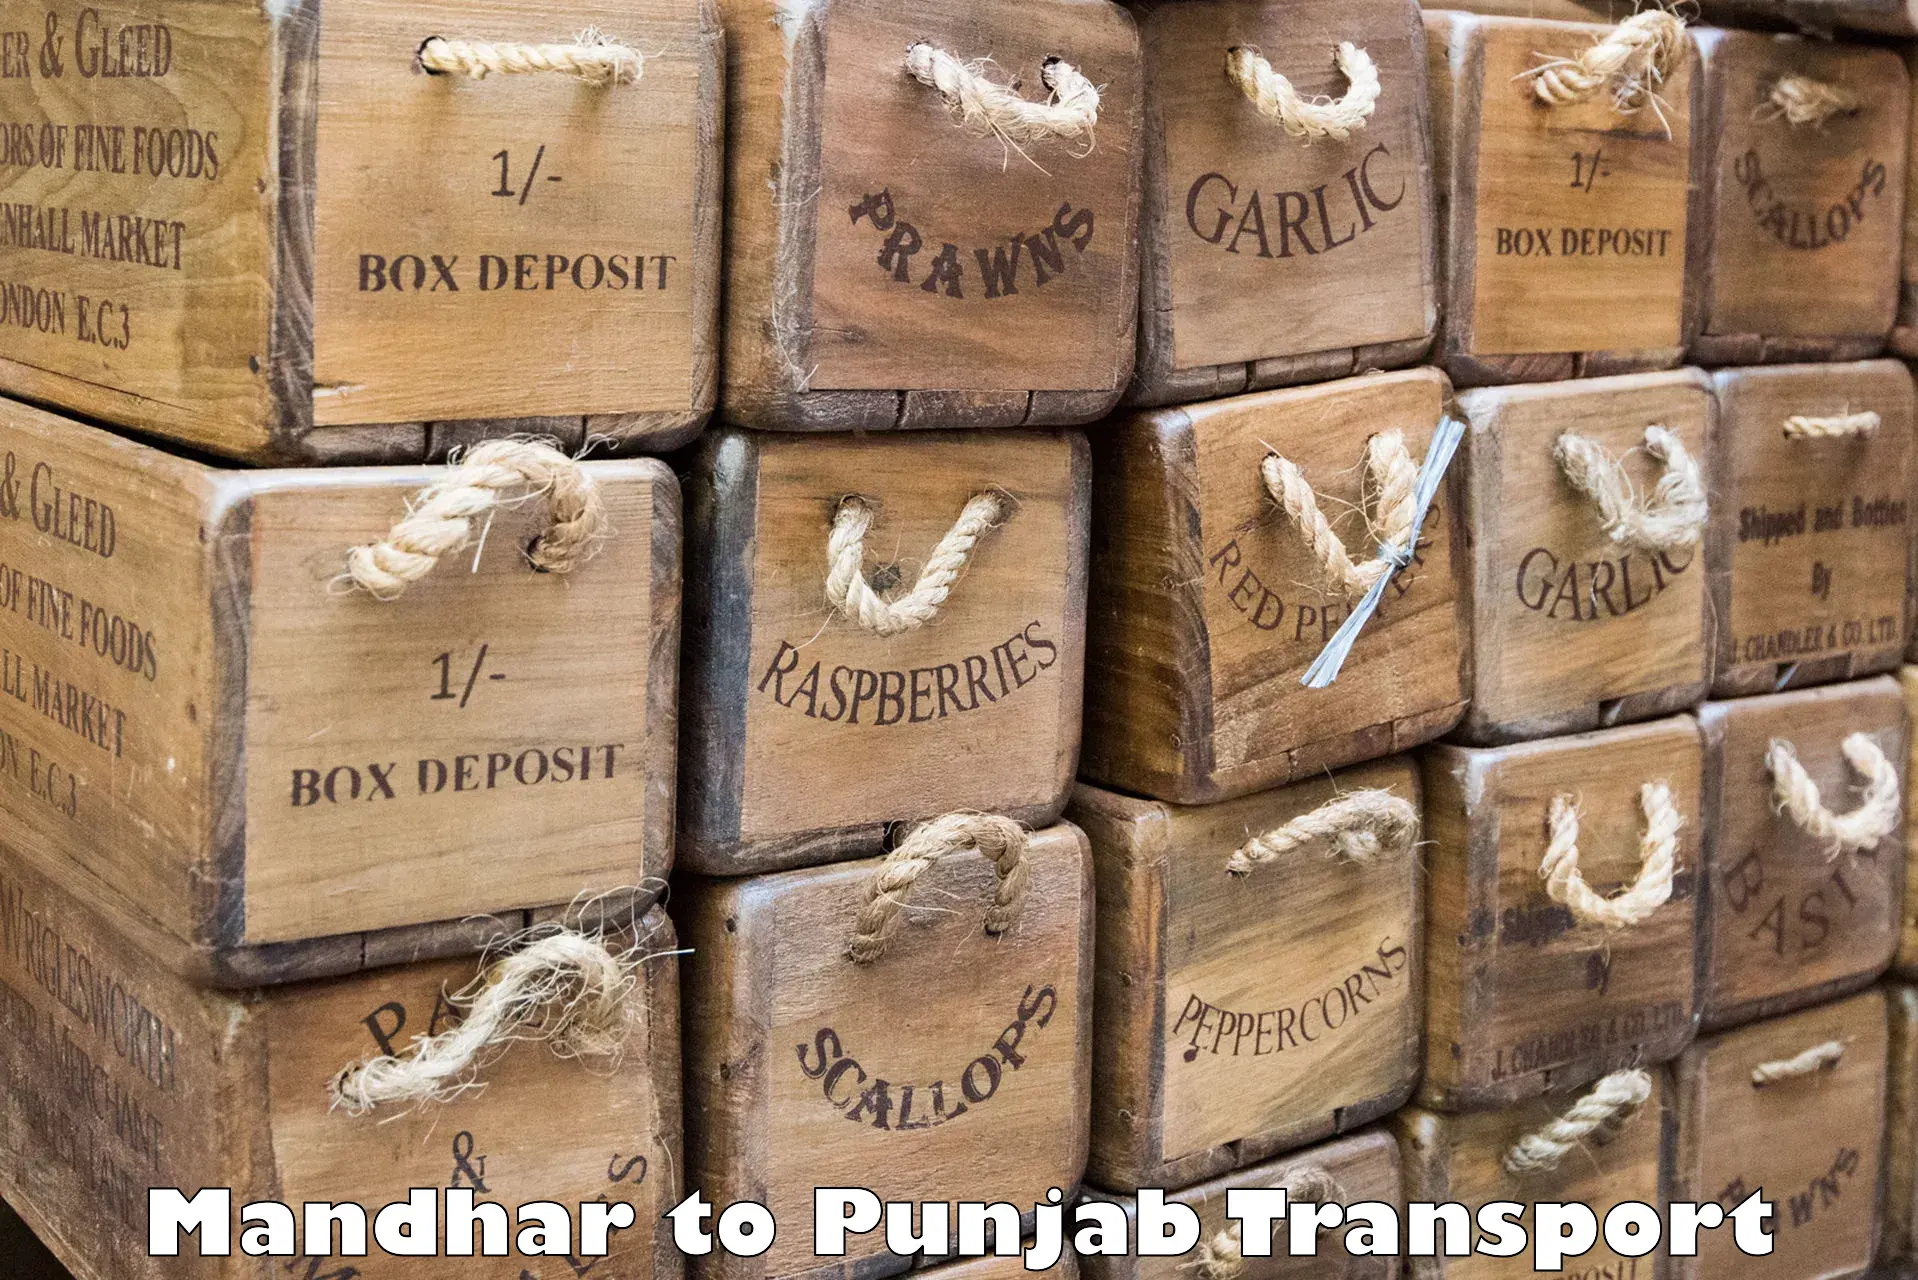 Pick up transport service Mandhar to Tarsikka